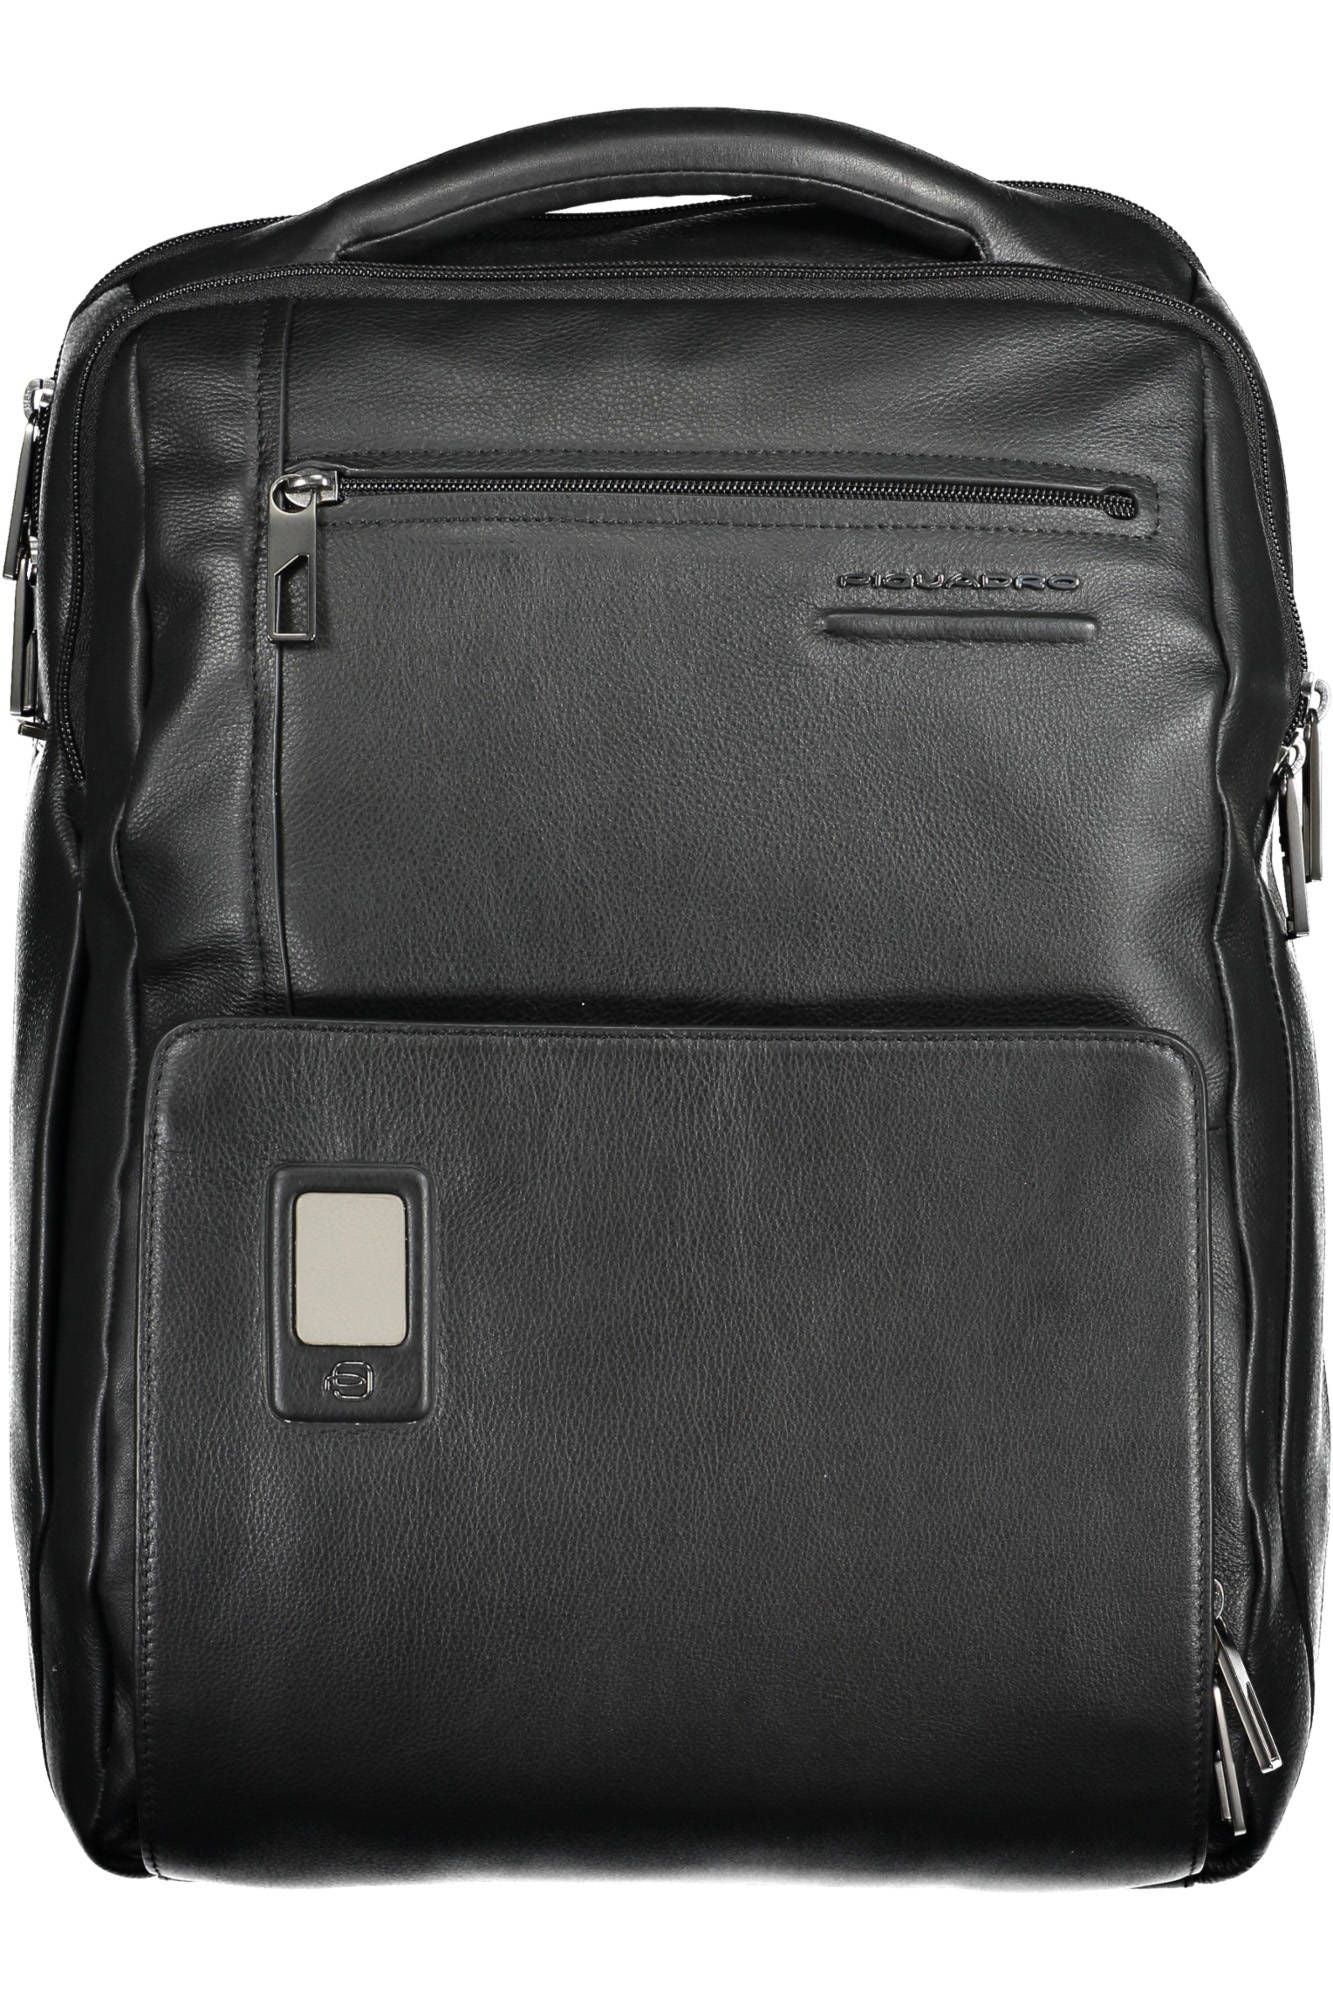 Elegant Black Leather Backpack with Laptop Pocket